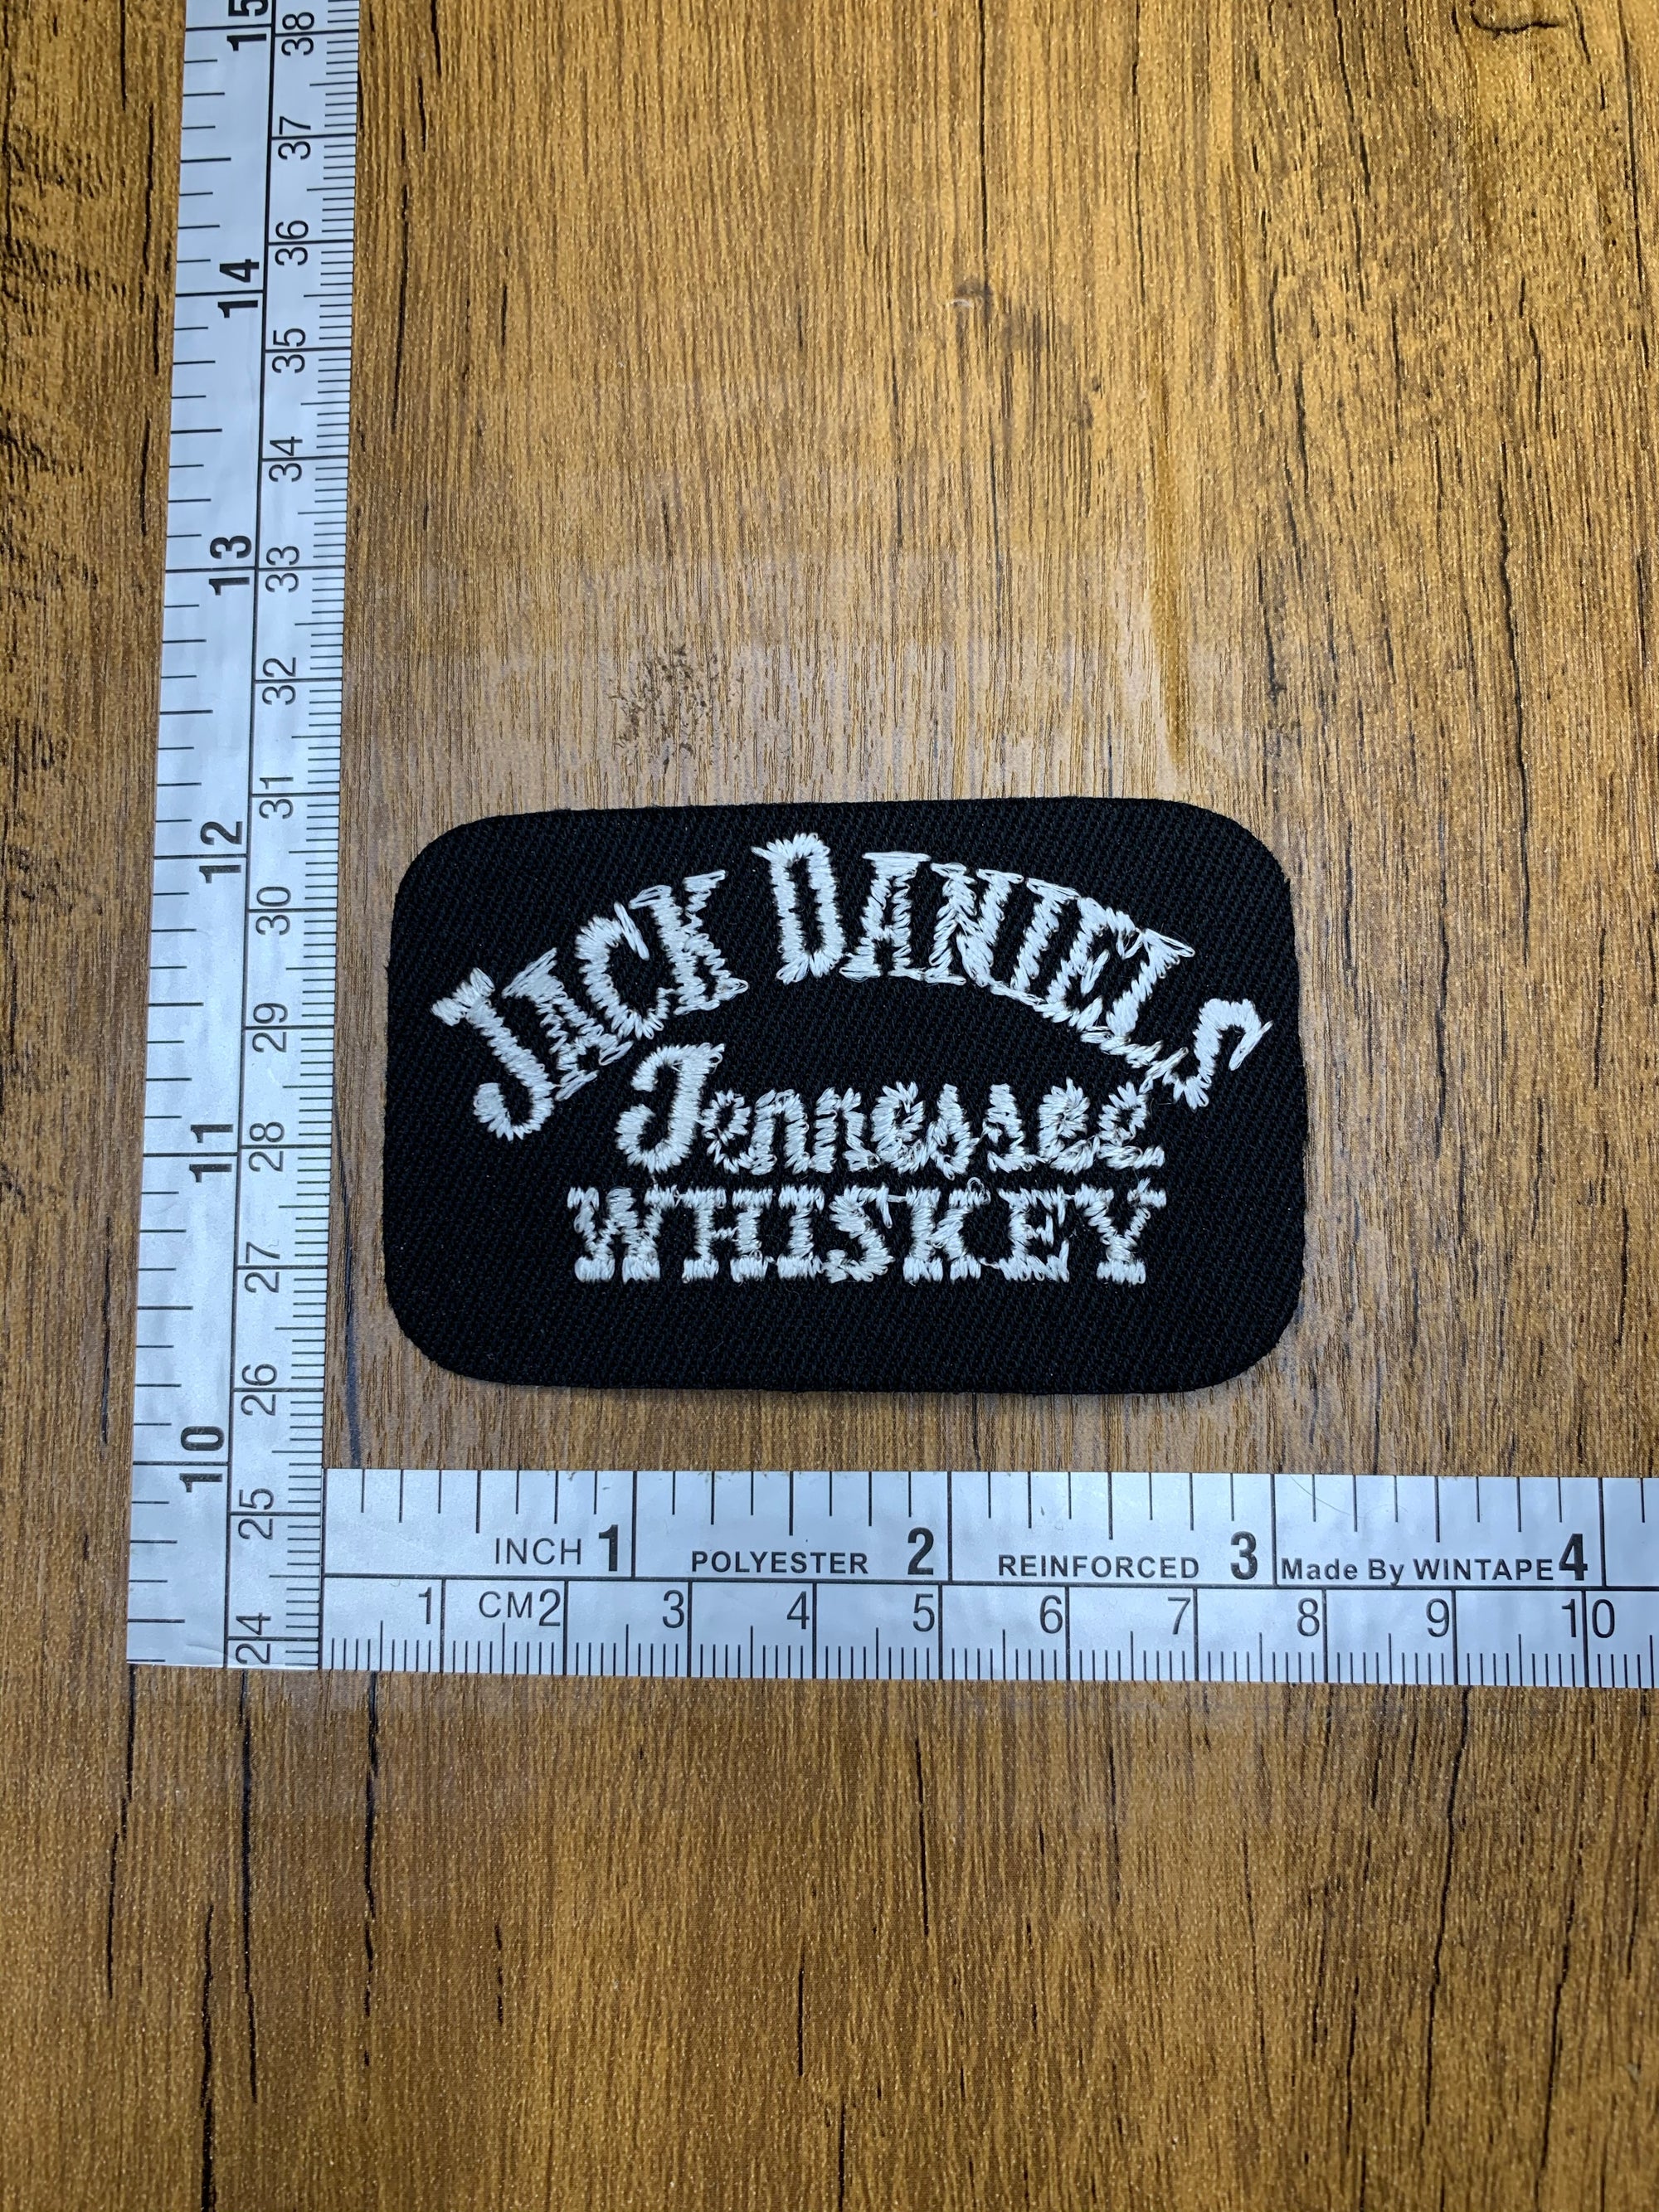 Vintage Jack Daniels Tennessee Whiskey